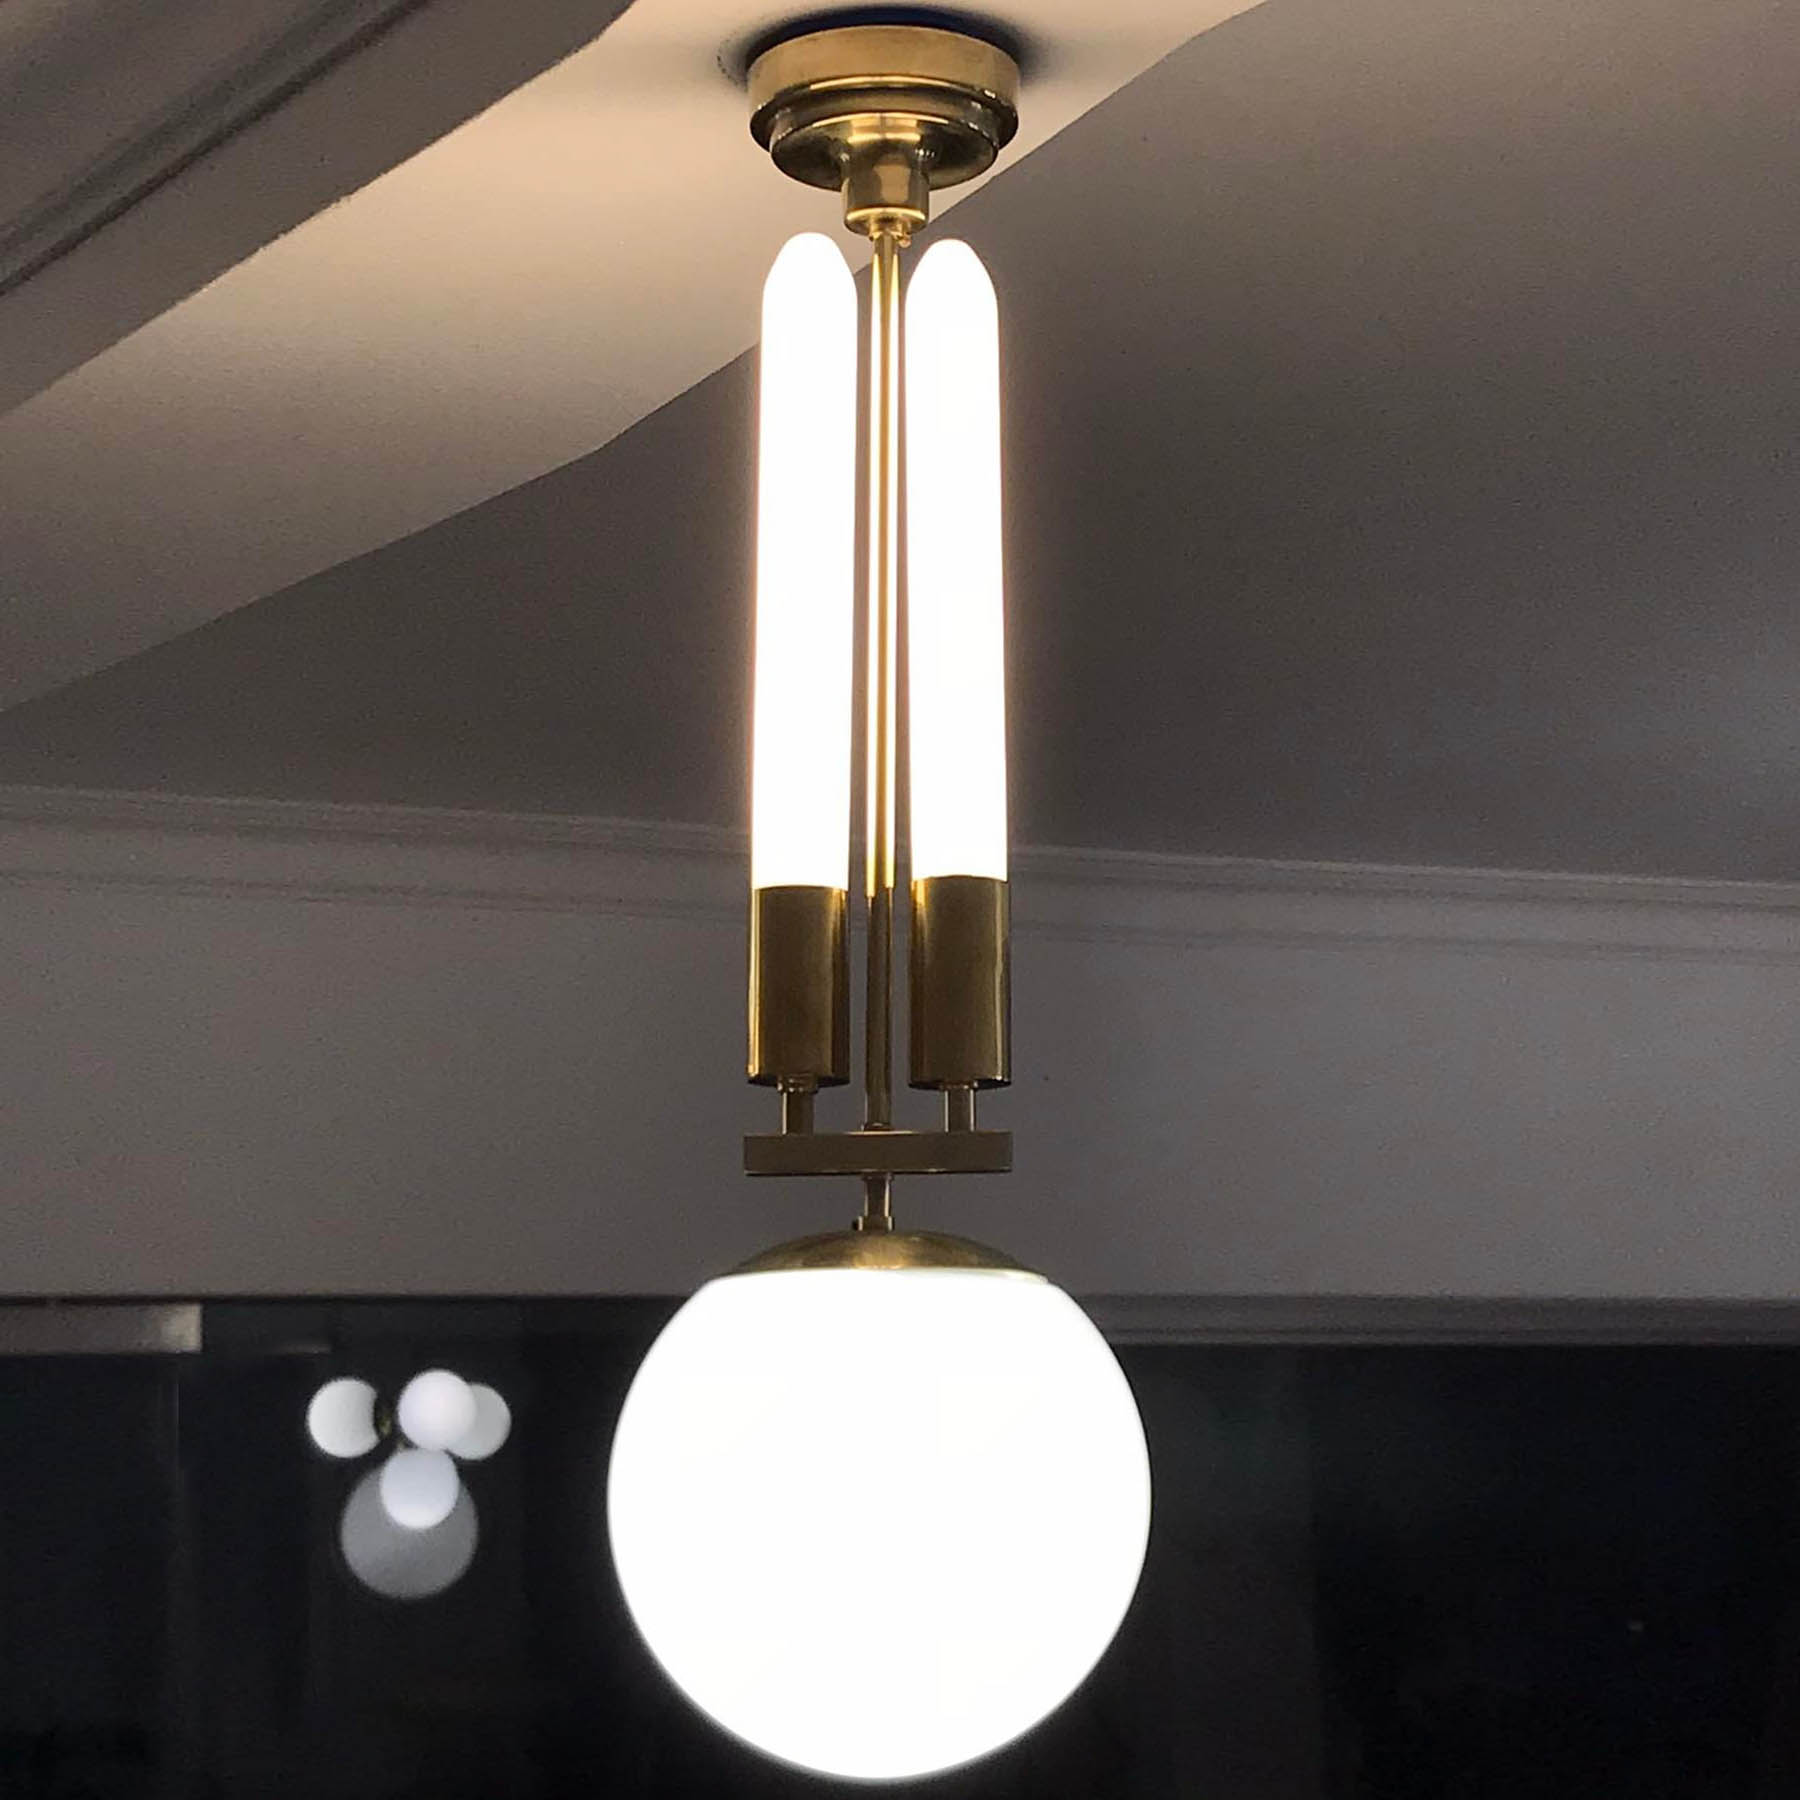 Extravagante Kugel-Hängeleuchte mit zwei Röhrenlampen im Art déco-Stil der 30er Jahre: Extravagante Kugel-Hängeleuchte im Art déco-Design der 30er Jahre, hier in Messing unlackiert